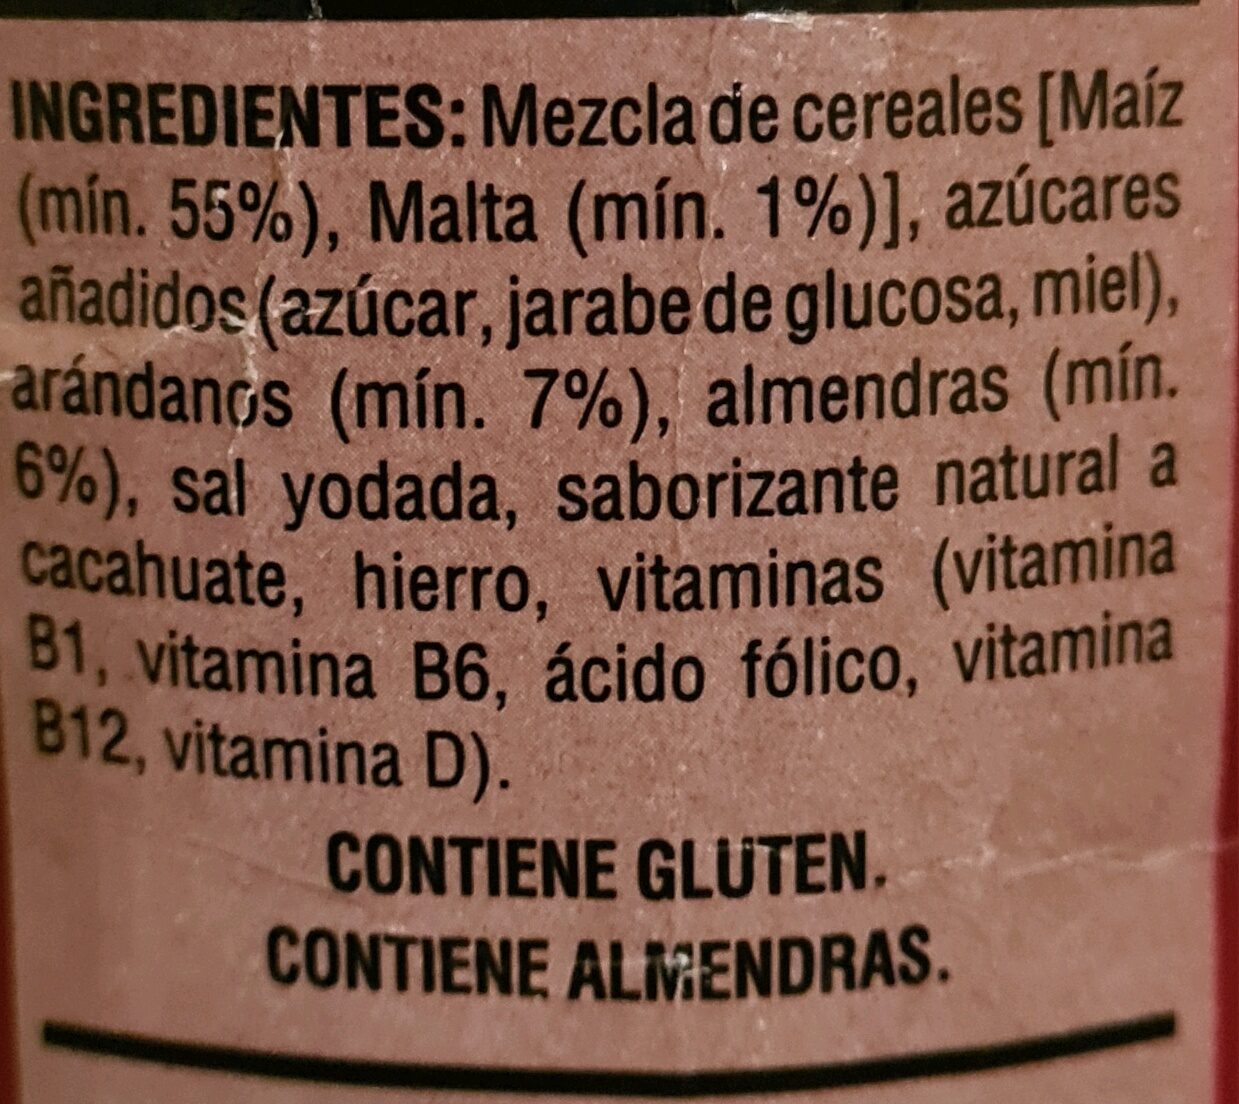 Cereal Kellogg's Extra arándanos con almendras - Ingredientes